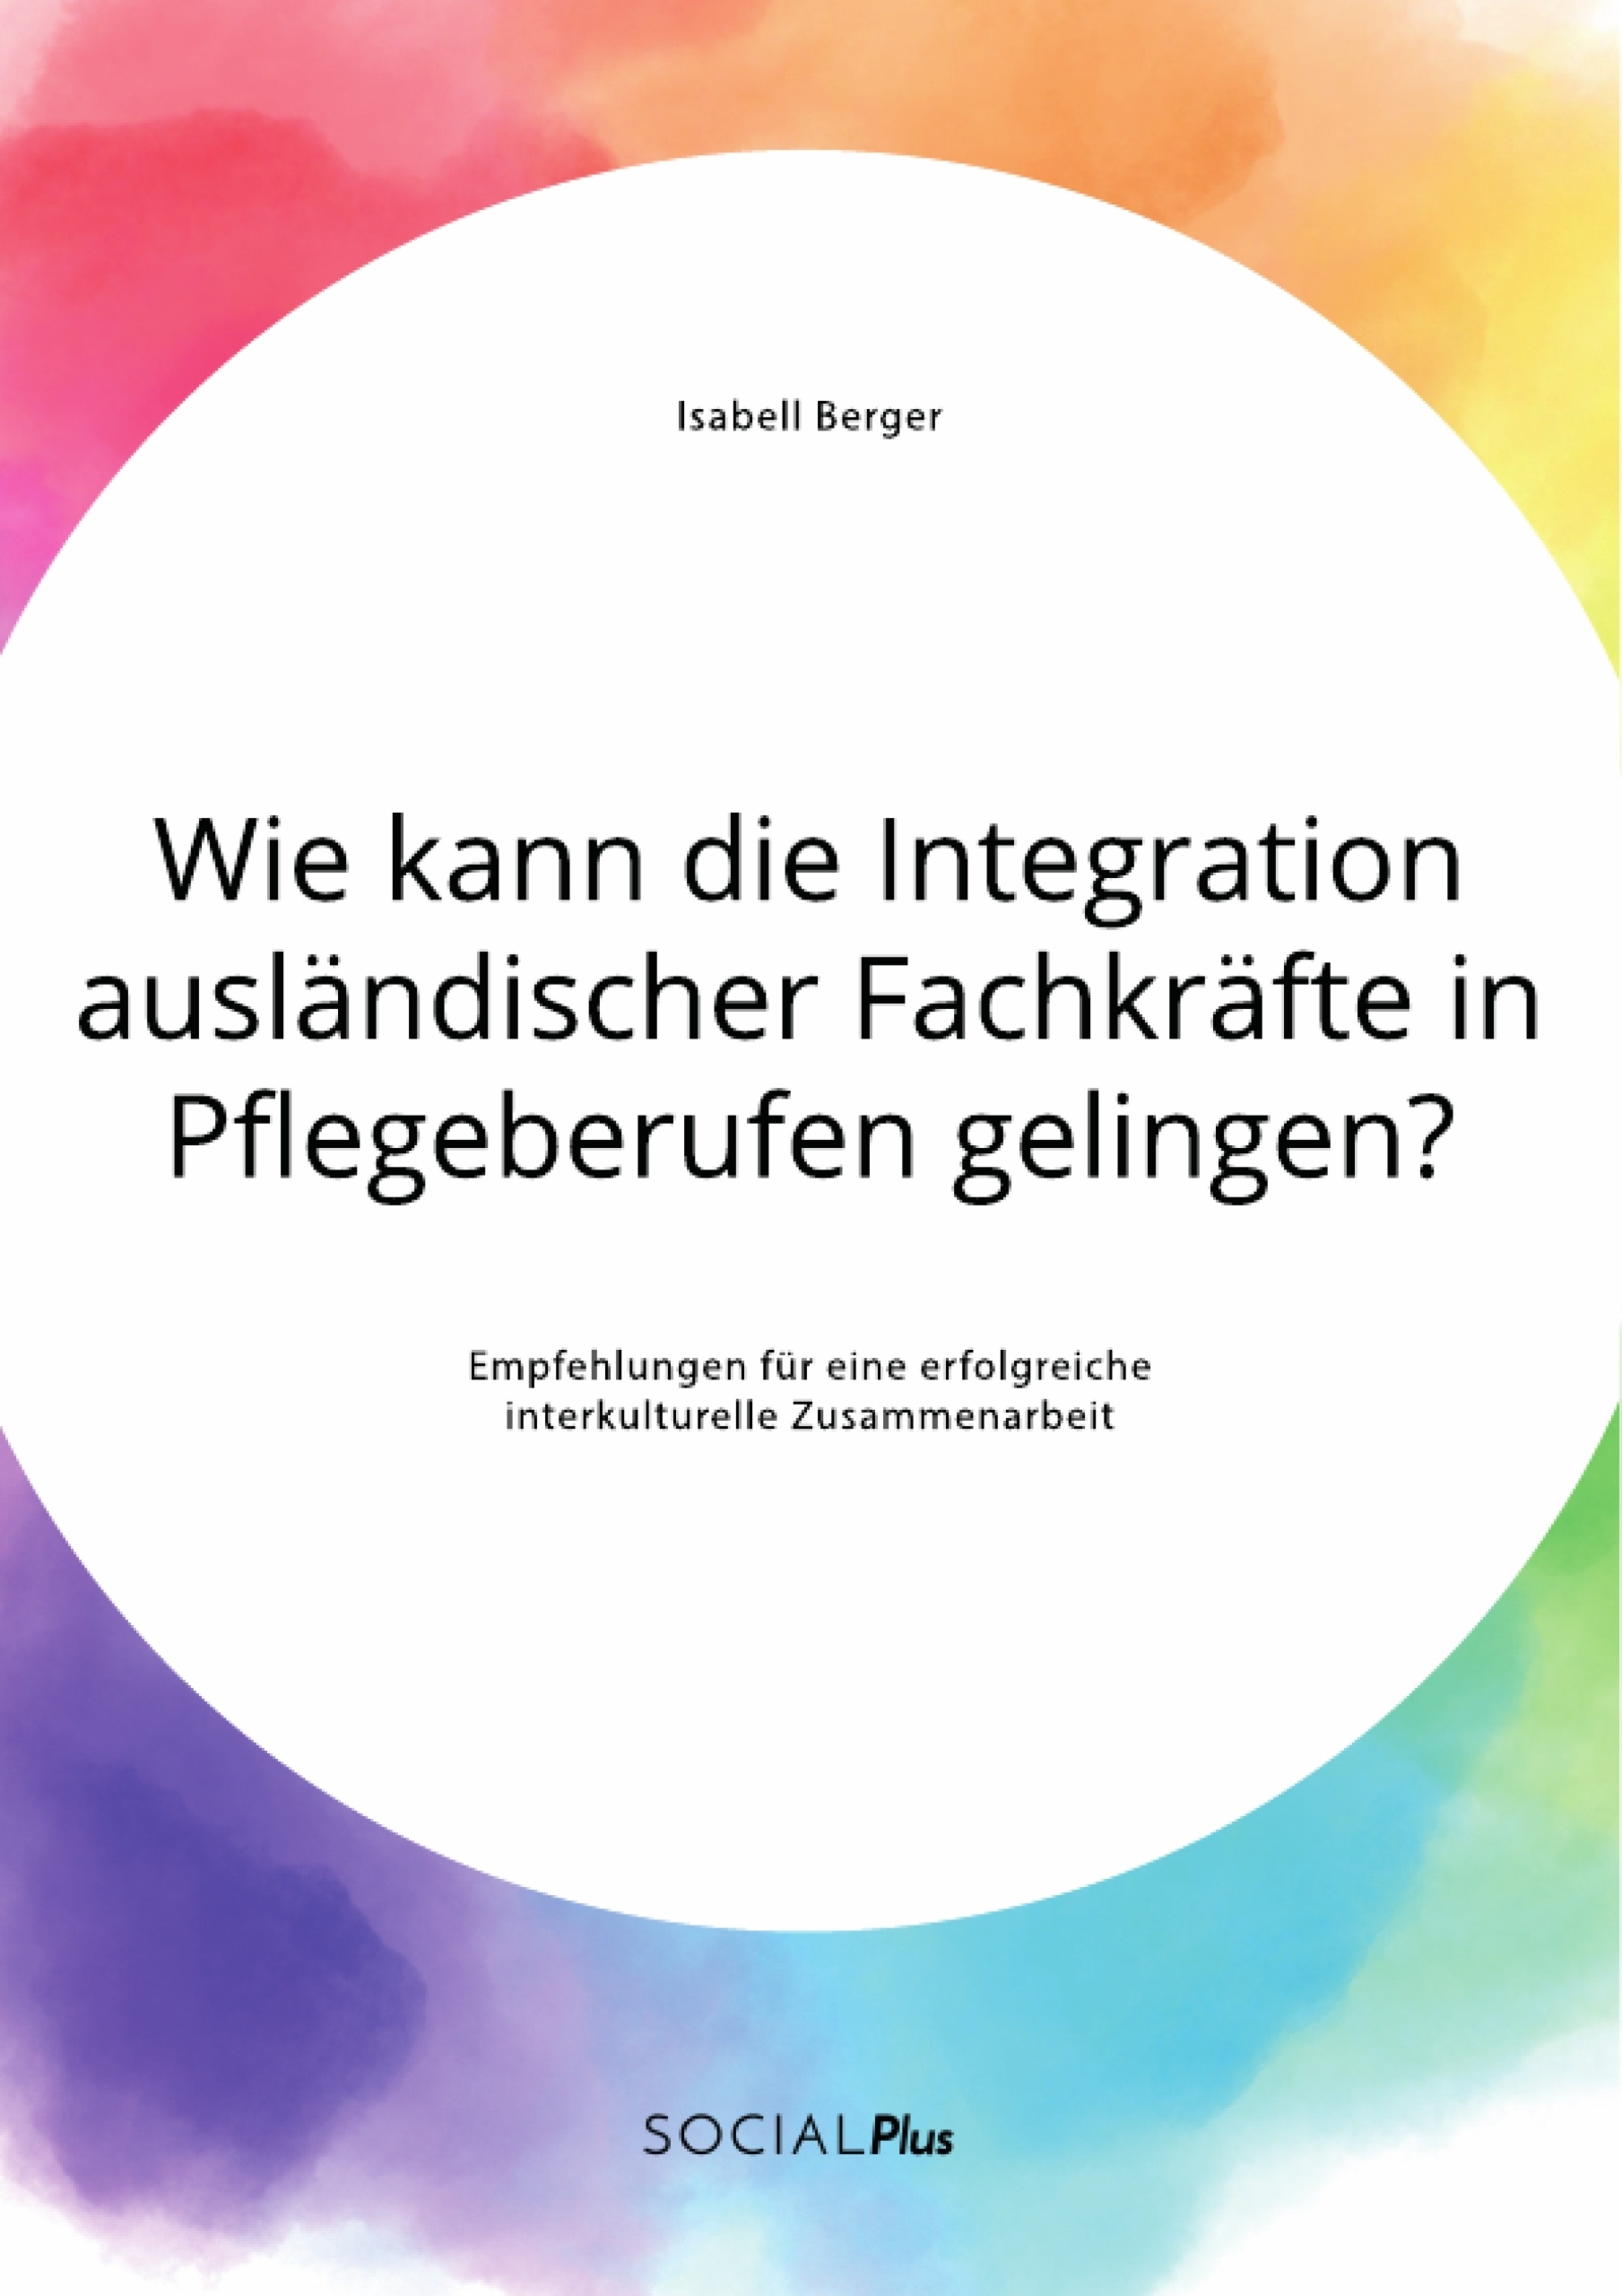 Title: Wie kann die Integration ausländischer Fachkräfte in Pflegeberufen gelingen? Empfehlungen für eine erfolgreiche interkulturelle Zusammenarbeit